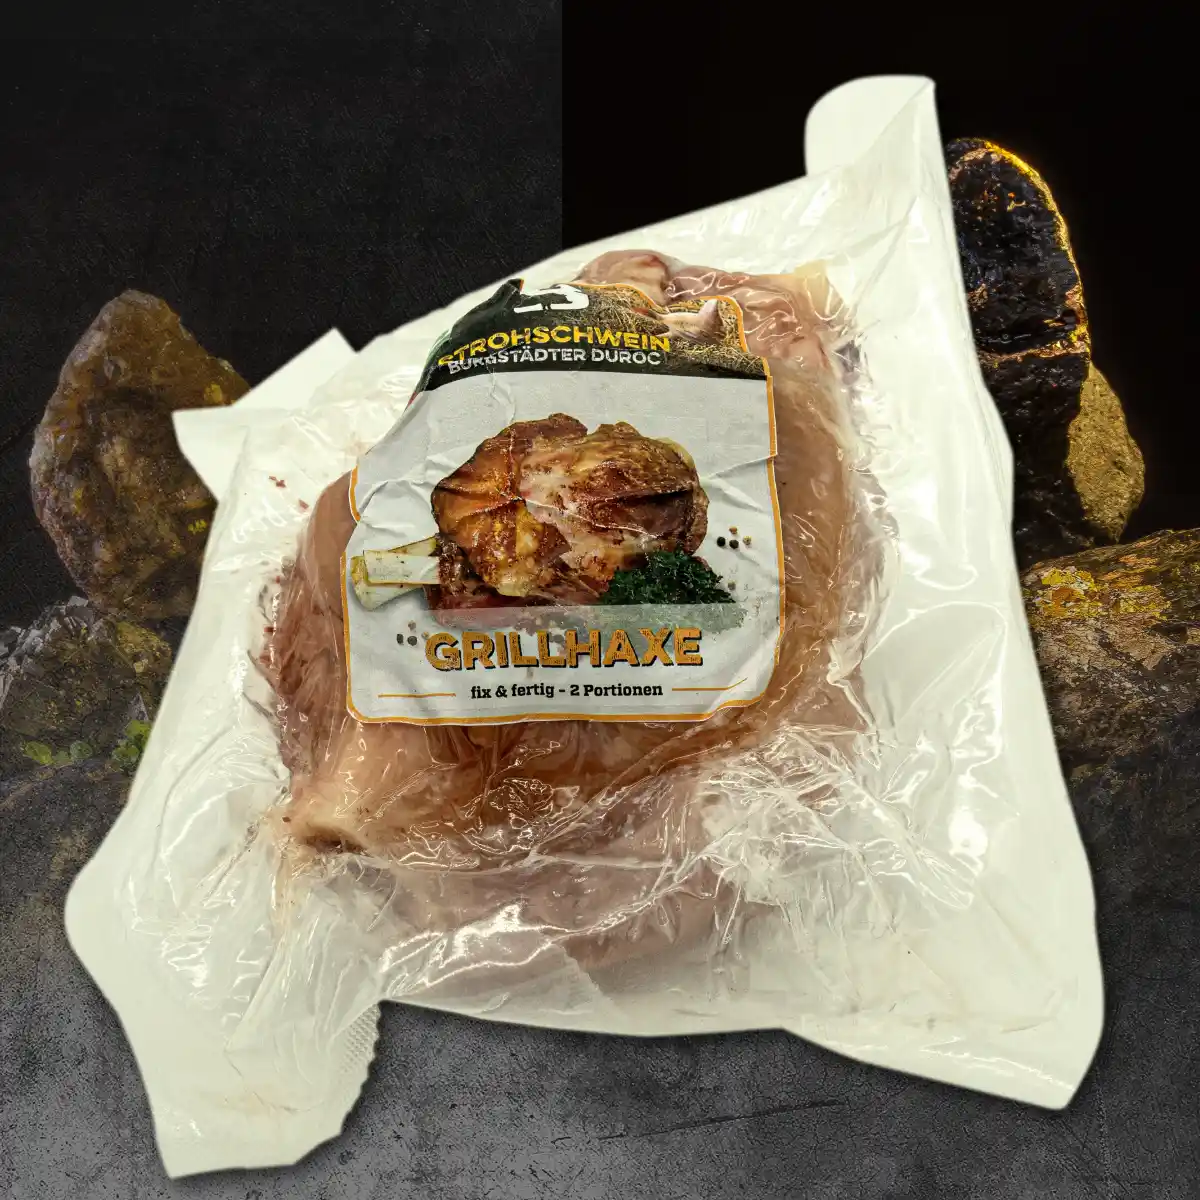 Grillhaxe vom Duroc Strohschwein in weißer Verpackung